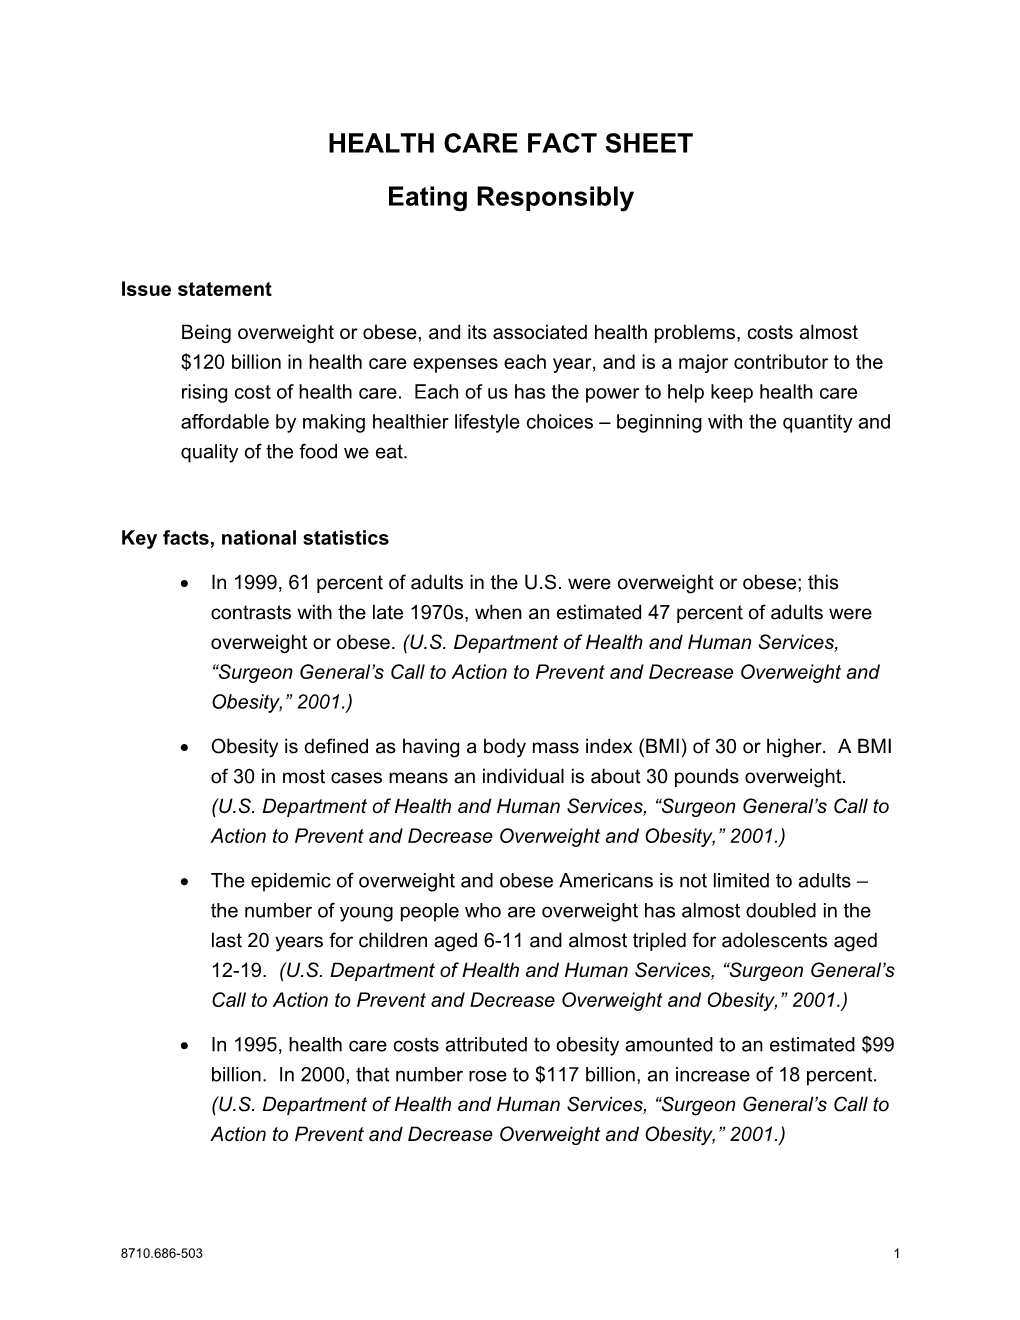 Fact Sheet: Eating Responsibly